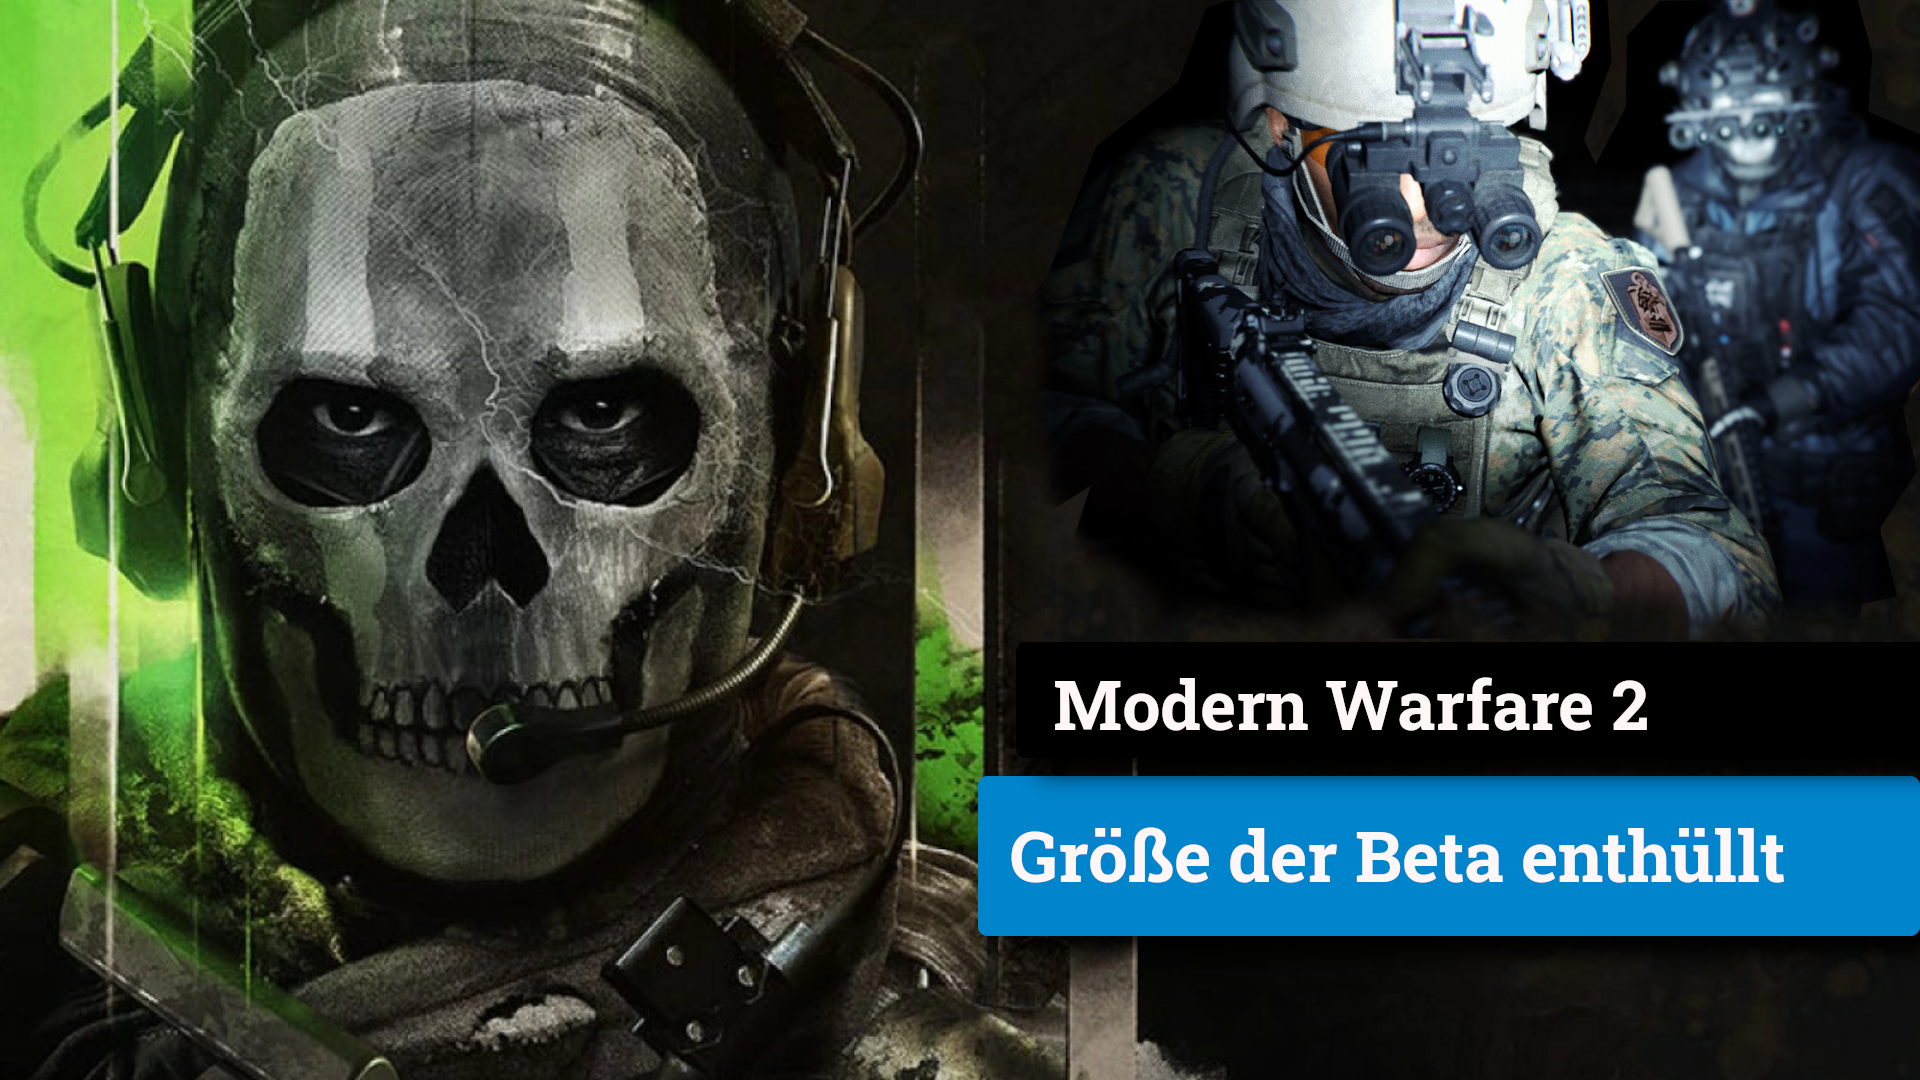 Call of Duty Modern Warfare 2: Inilah ukuran penembak beta